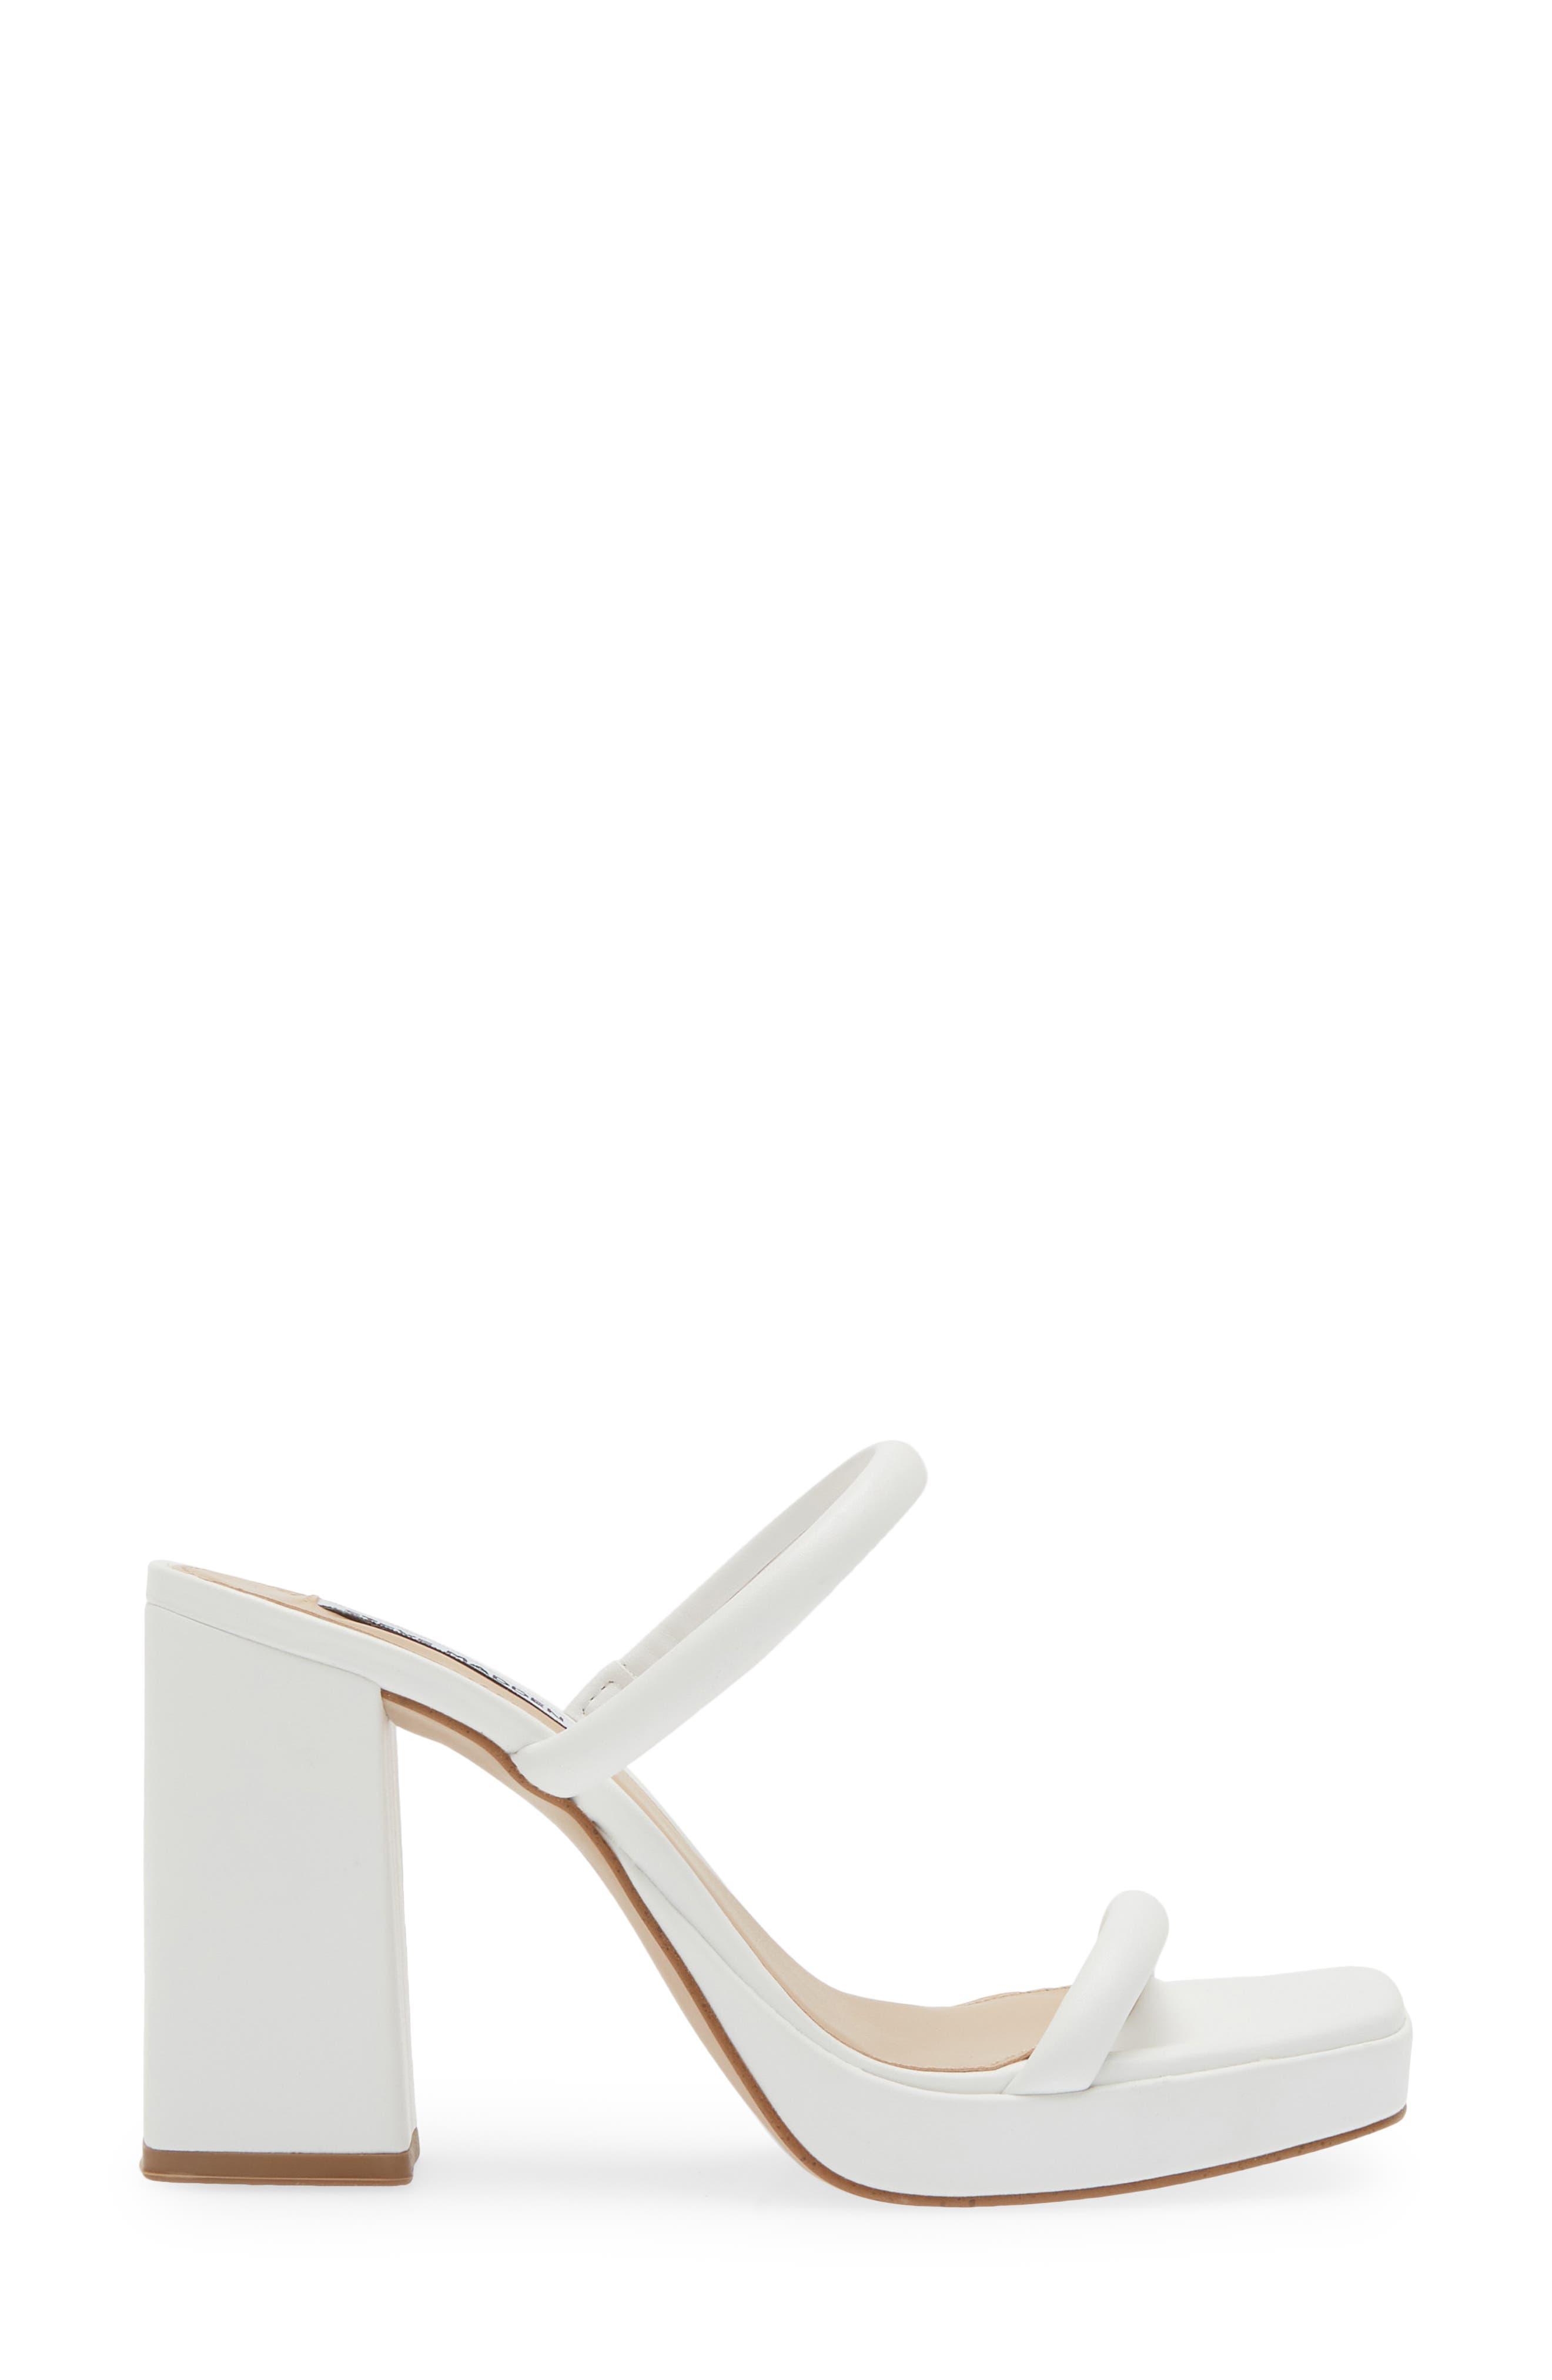 Steve Madden Polly Slide Sandal in White | Lyst